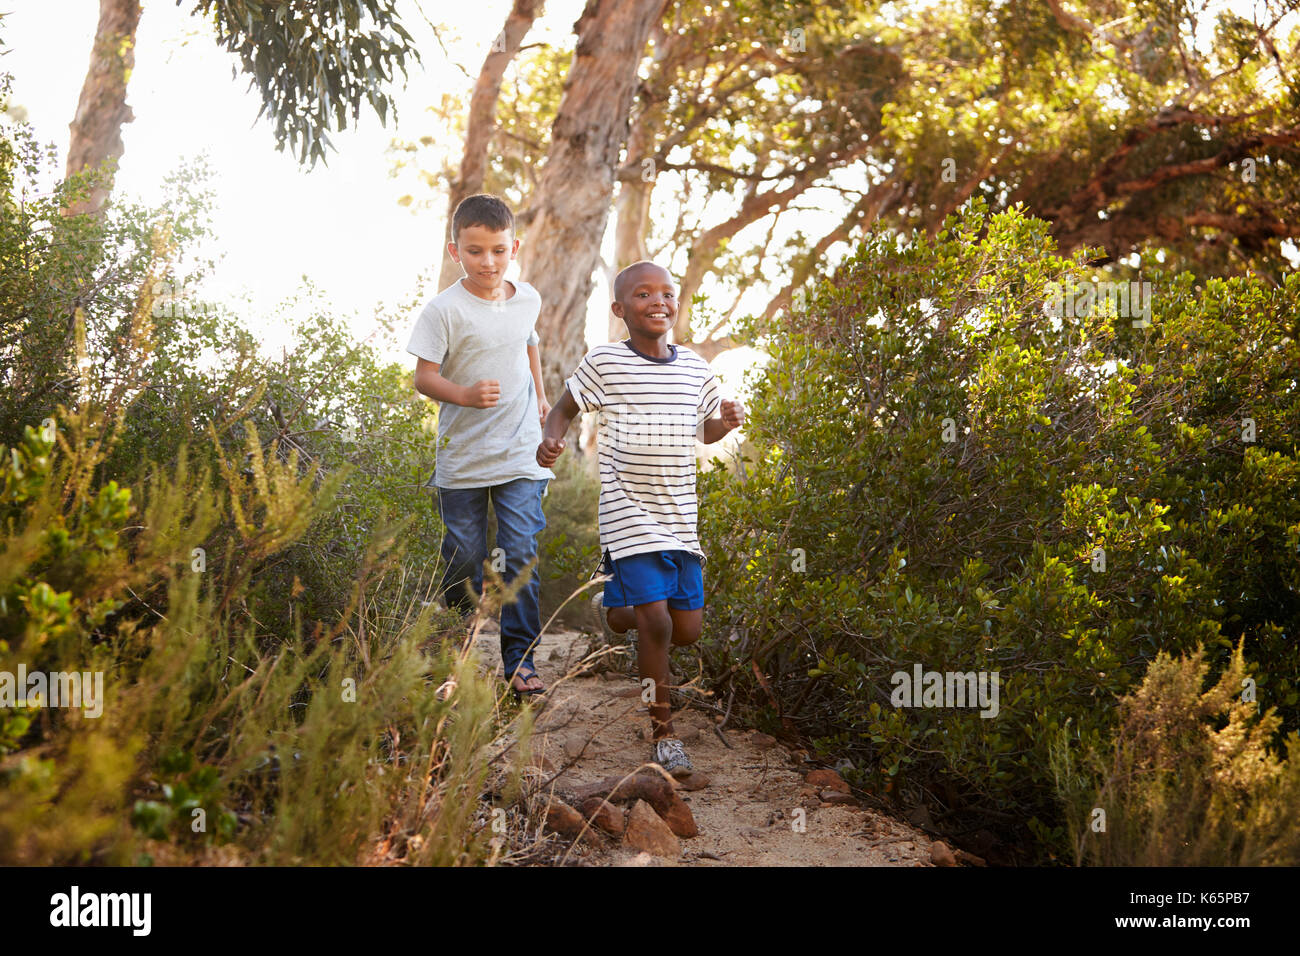 Deux jeunes garçons souriants courant le long d'un chemin forestier Banque D'Images